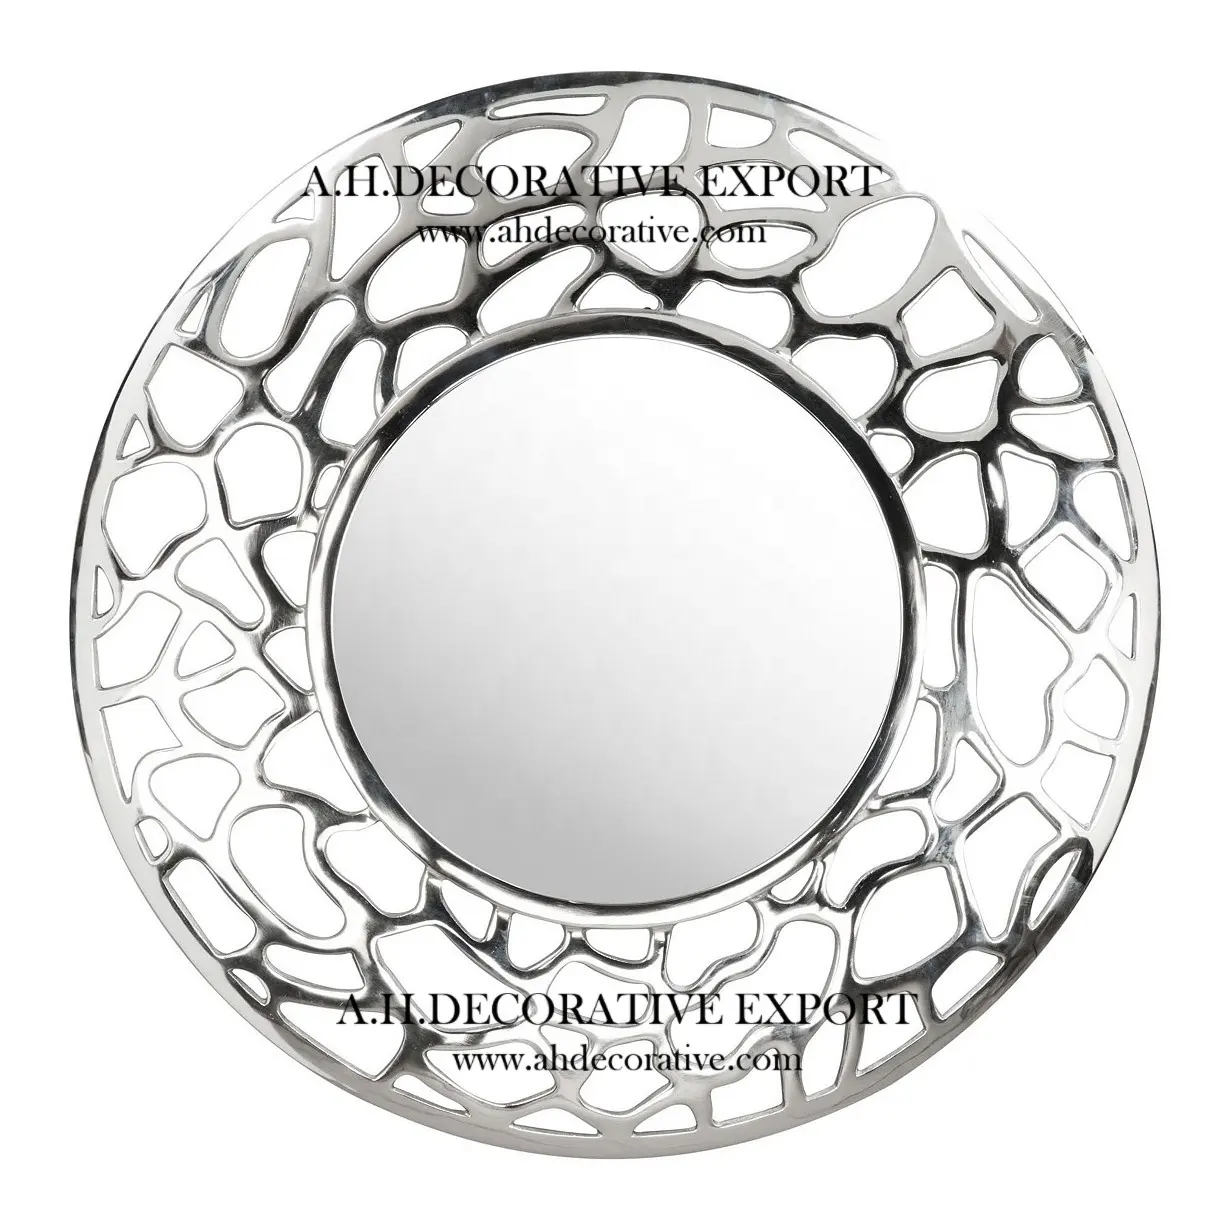 Sehr teurer runder silberner Aluminium rahmen in antikem dekorativem Wand spiegel in Nickel farbe für Zuhause und Hotels